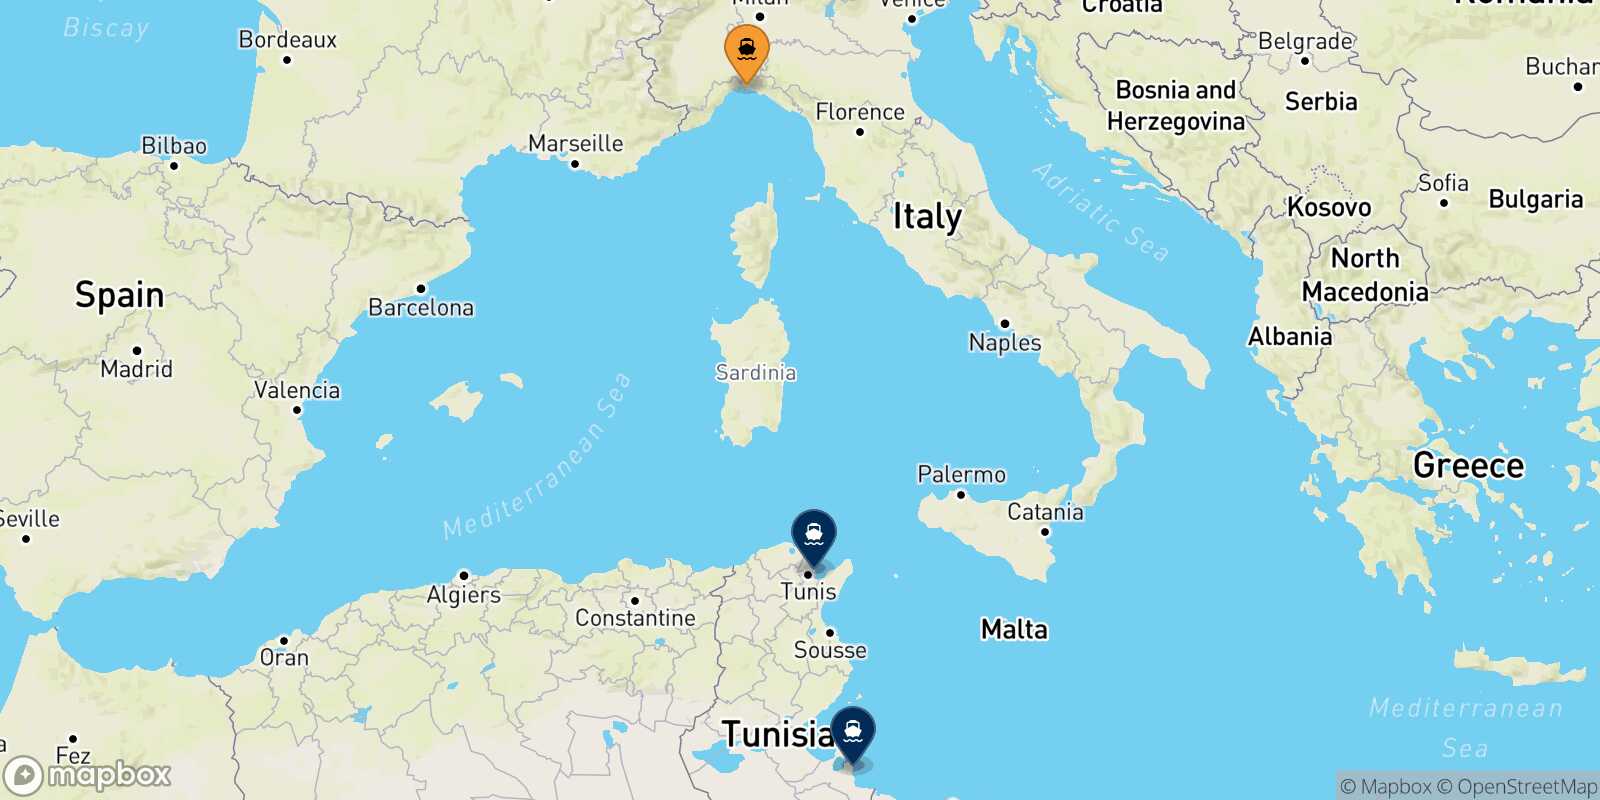 Mappa delle destinazioni raggiungibili da Genova